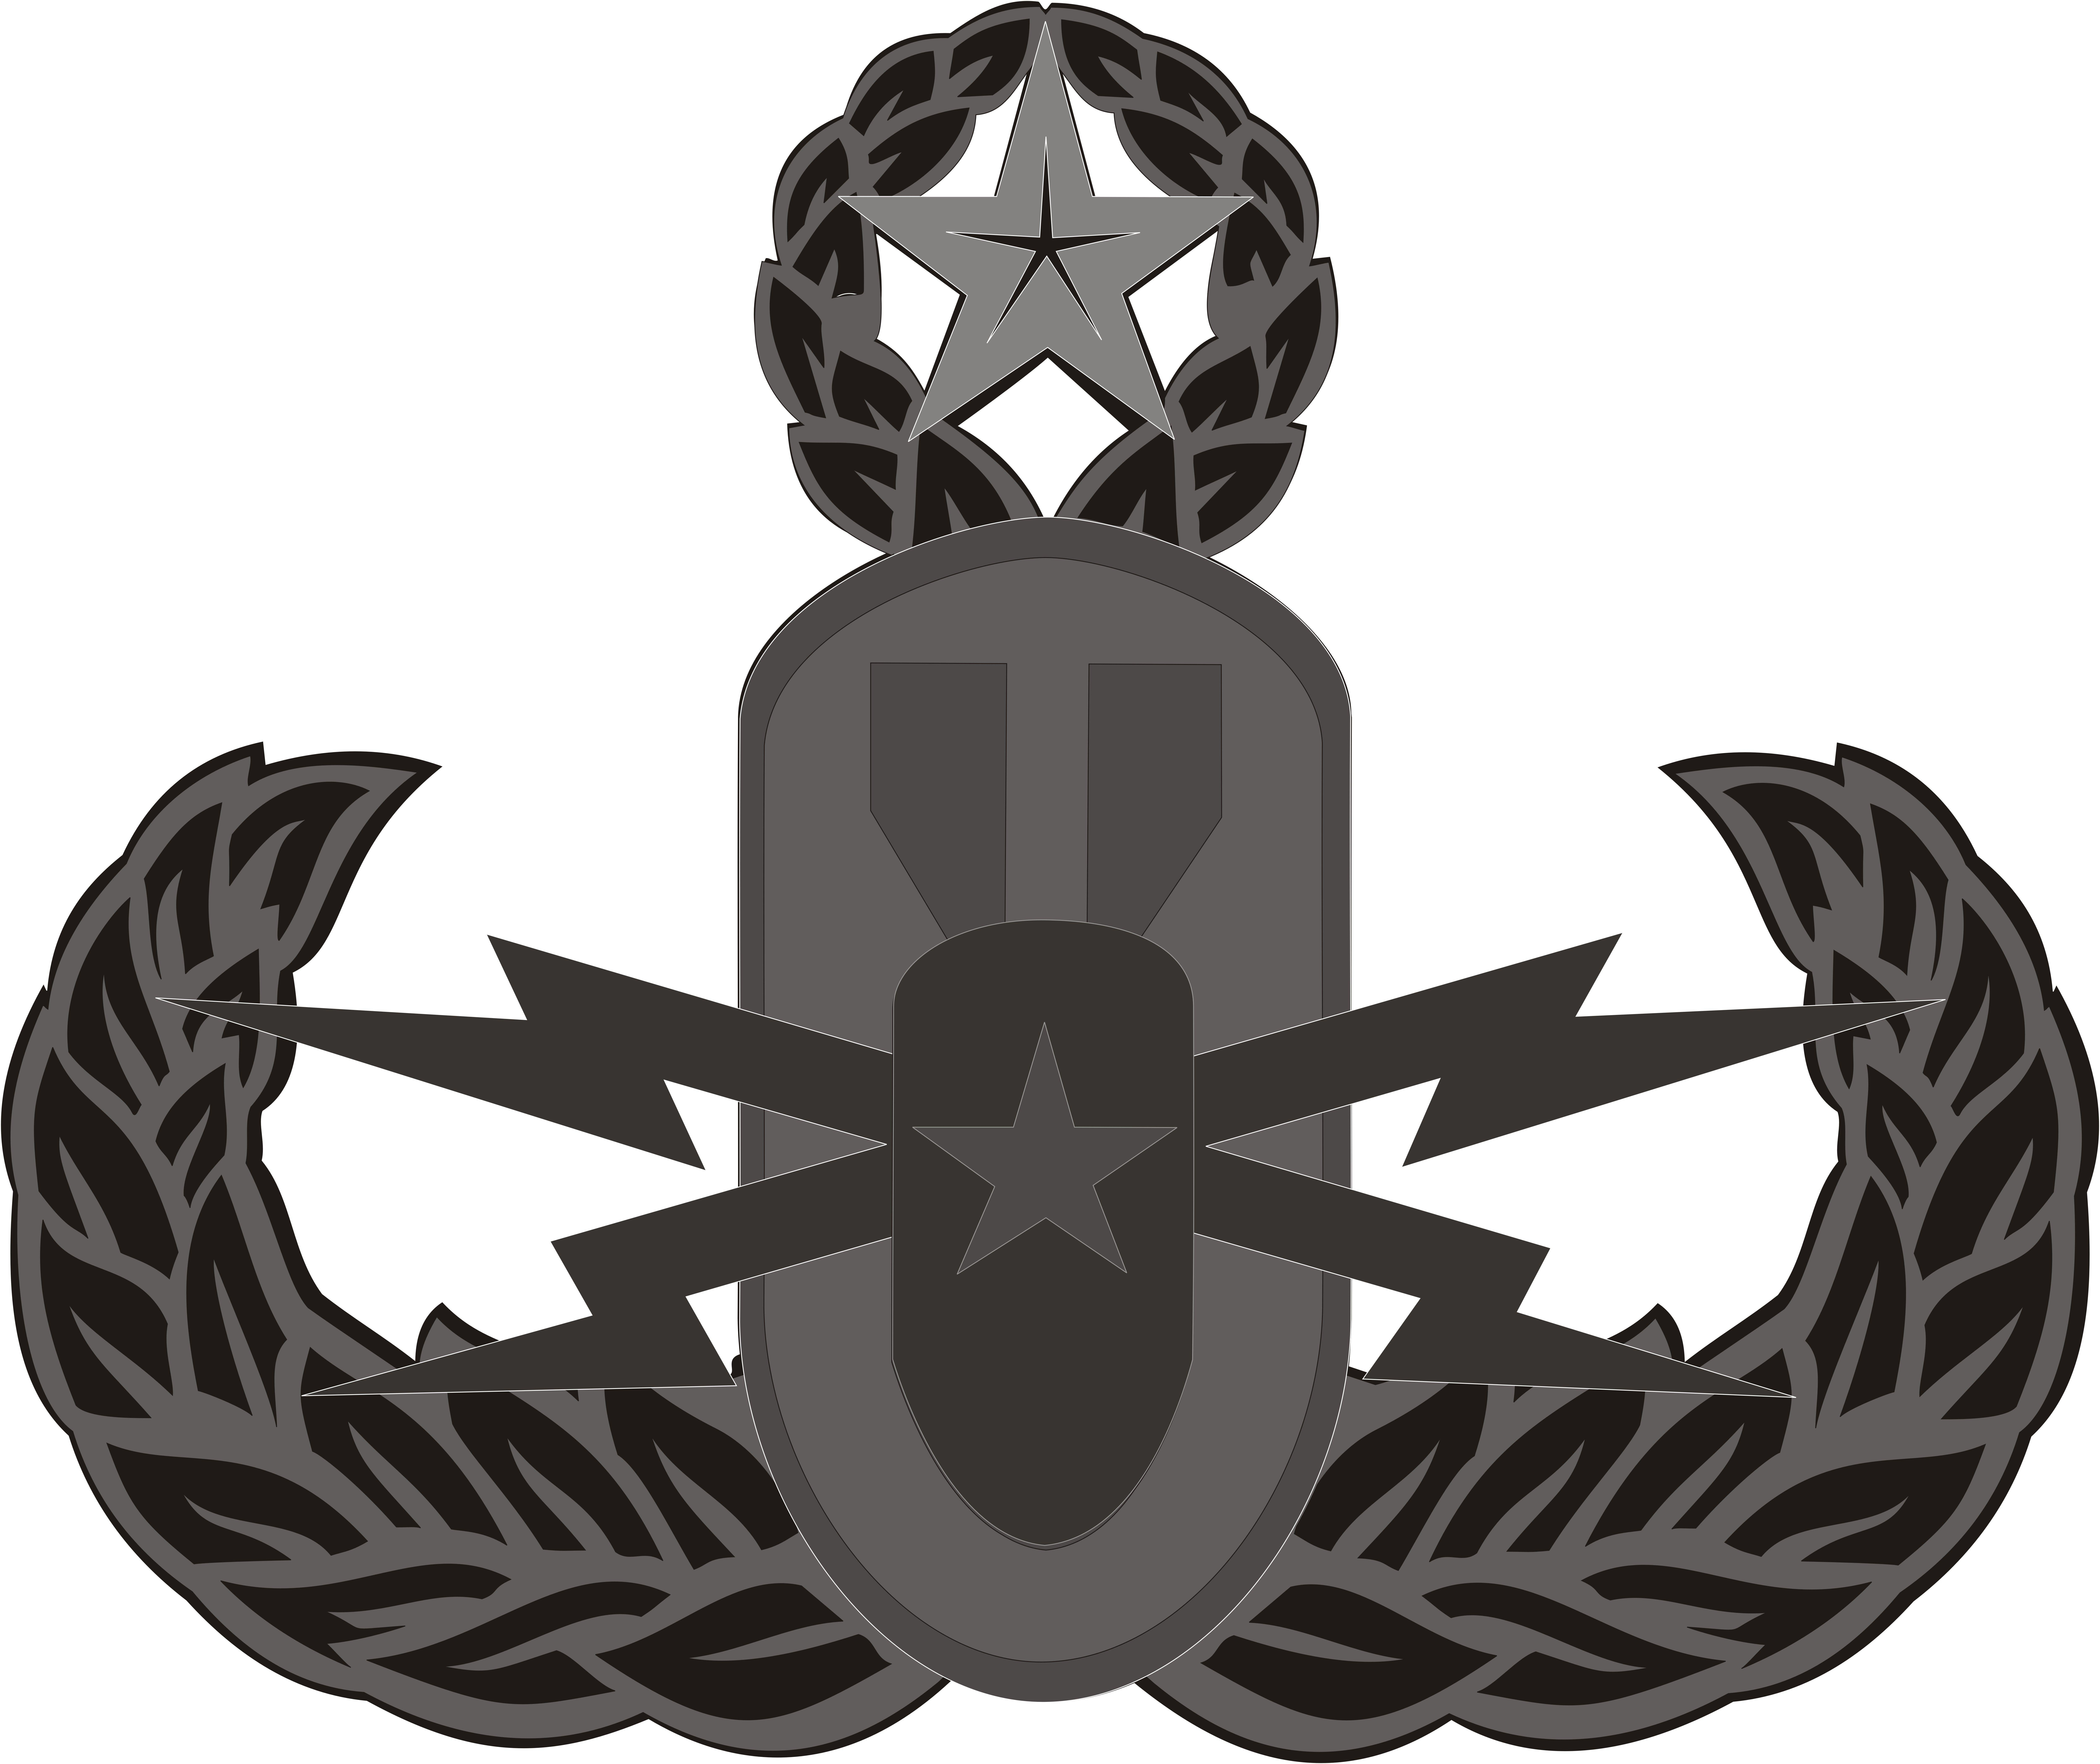 Ordnance Bomb Logo - EOD Bomb logo | Stephen Z Metal's Blog